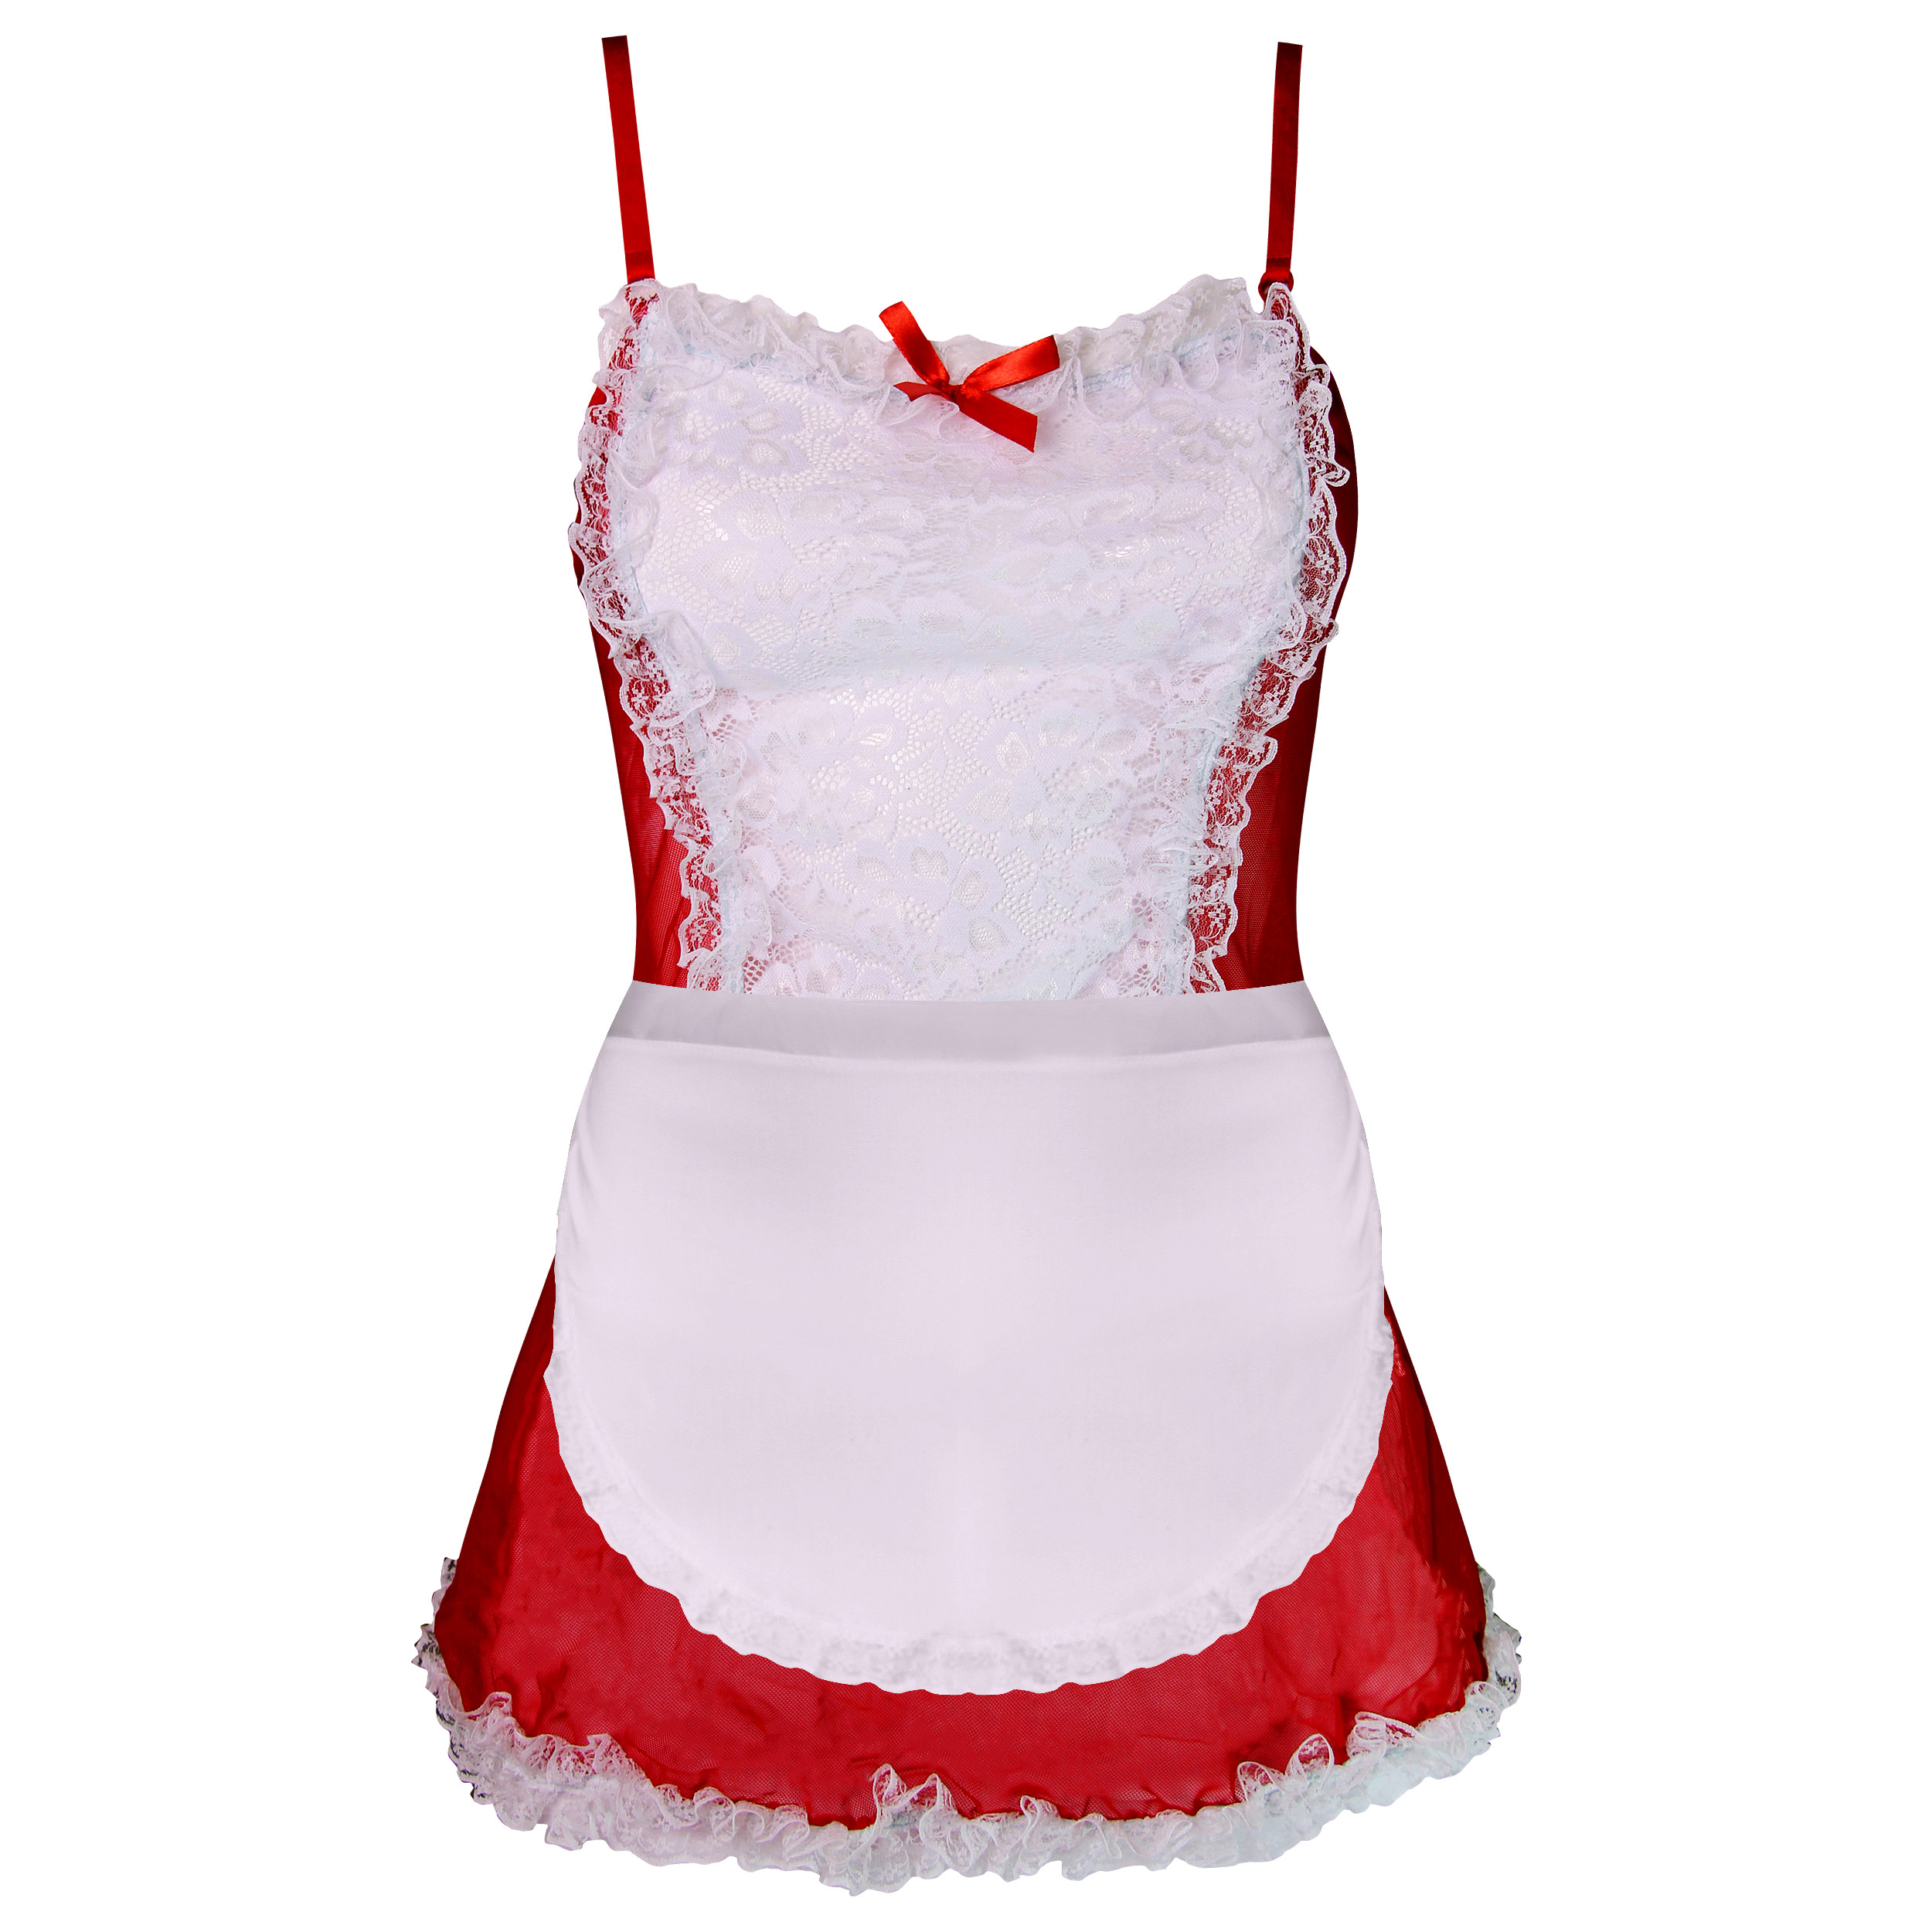 ست لباس خواب زنانه ماییلدا مدل فانتزی کد 3684-413 رنگ قرمز -  - 4